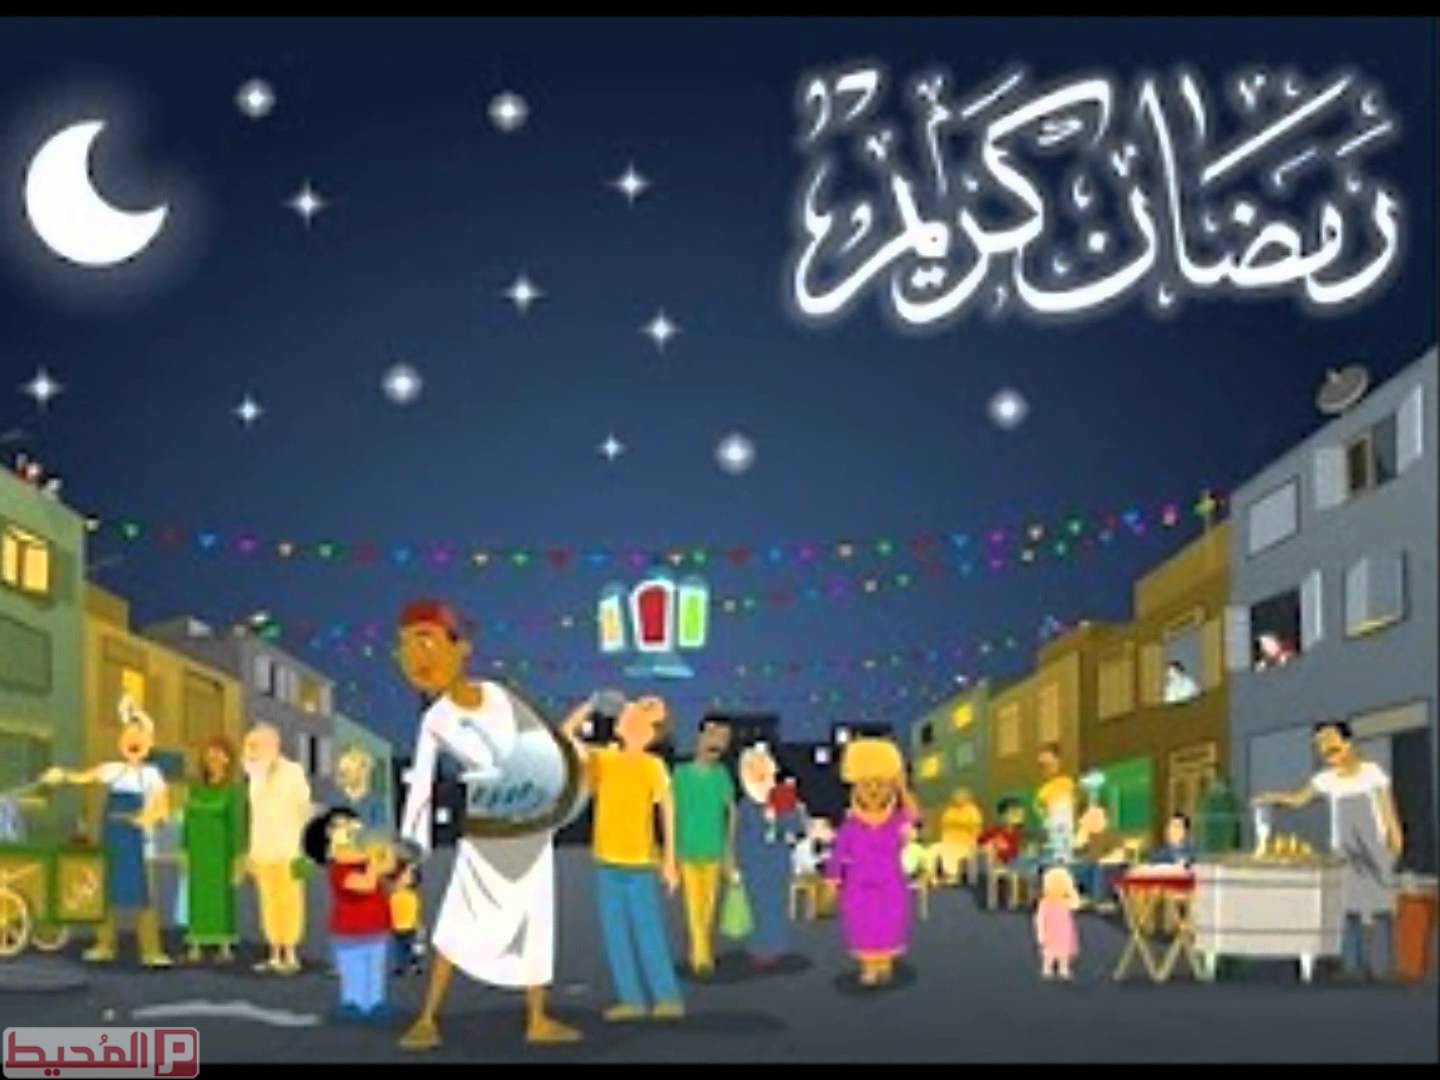 تهنئة شهر رمضان المبارك 2